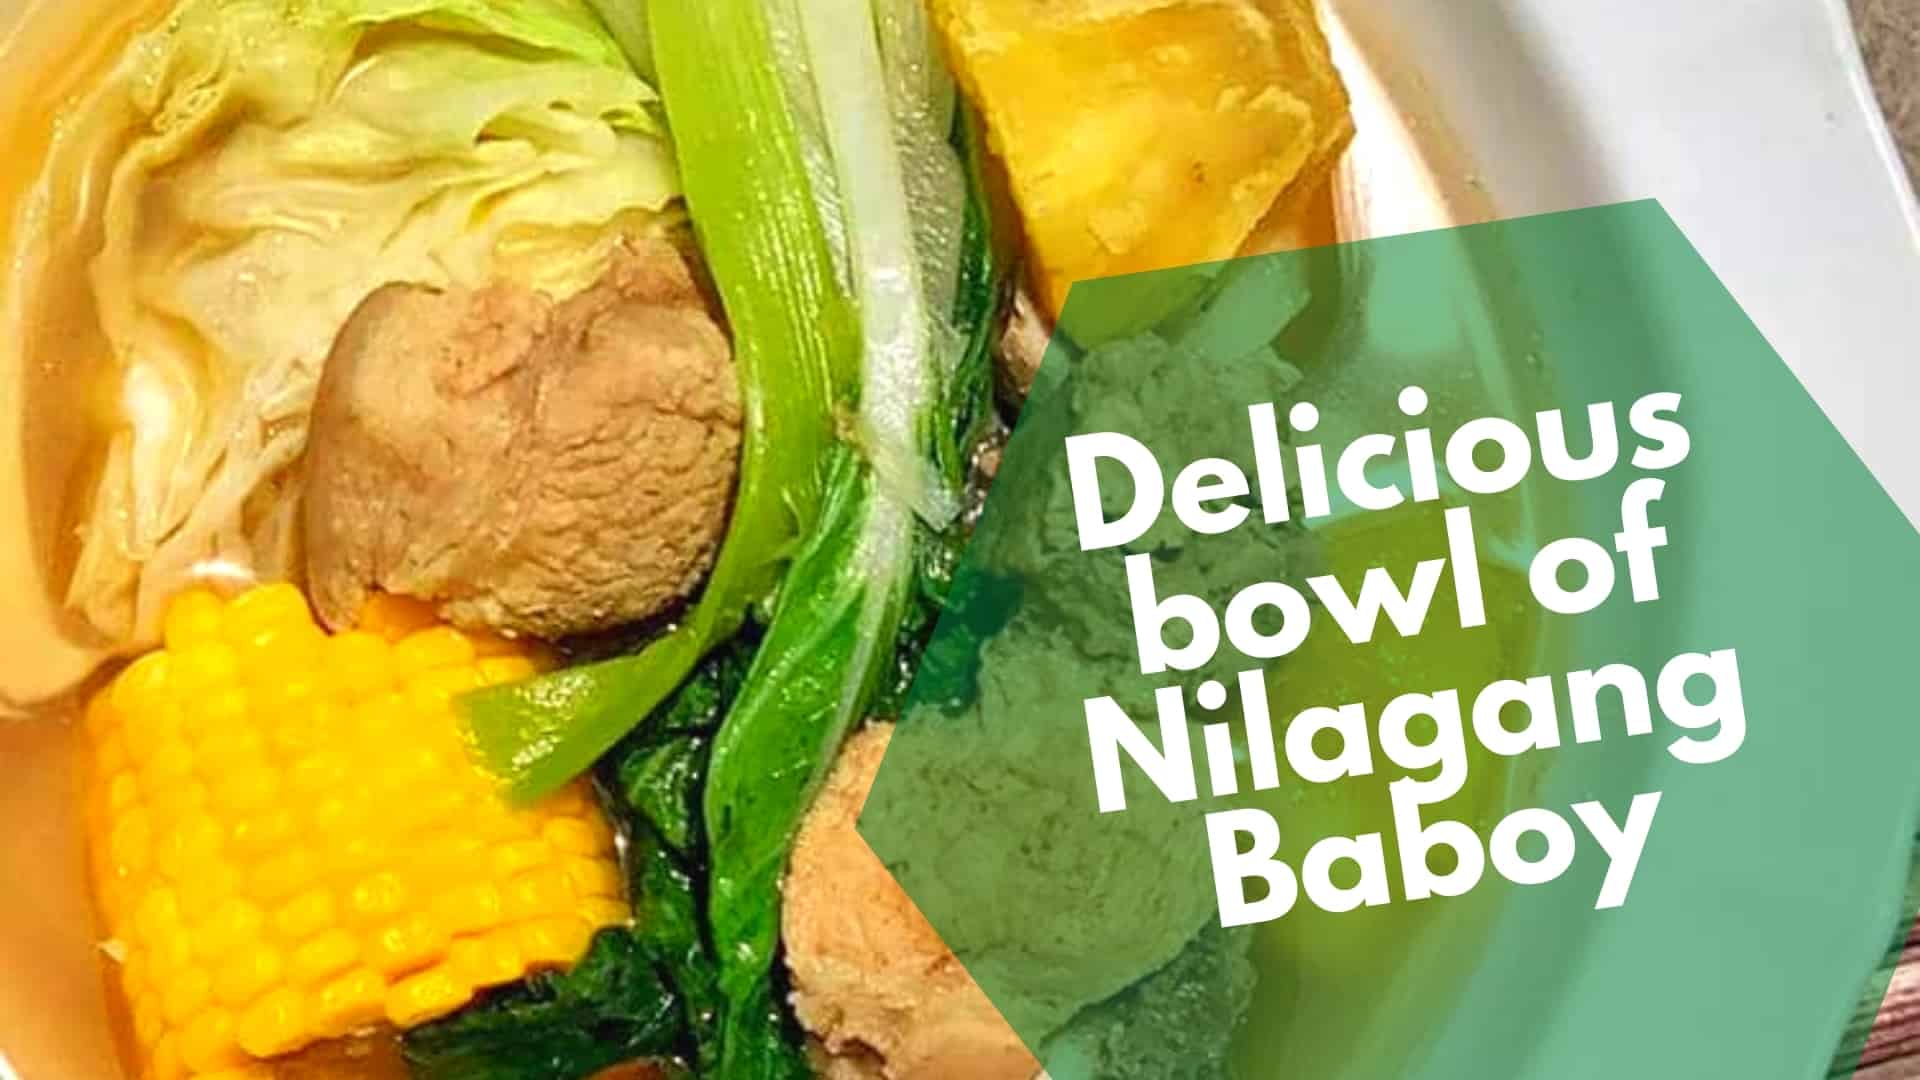 دستور غذای بچه نیلاگانگ (Pork nilaga): سوپ گوشت خوک آب پز فیلیپینی